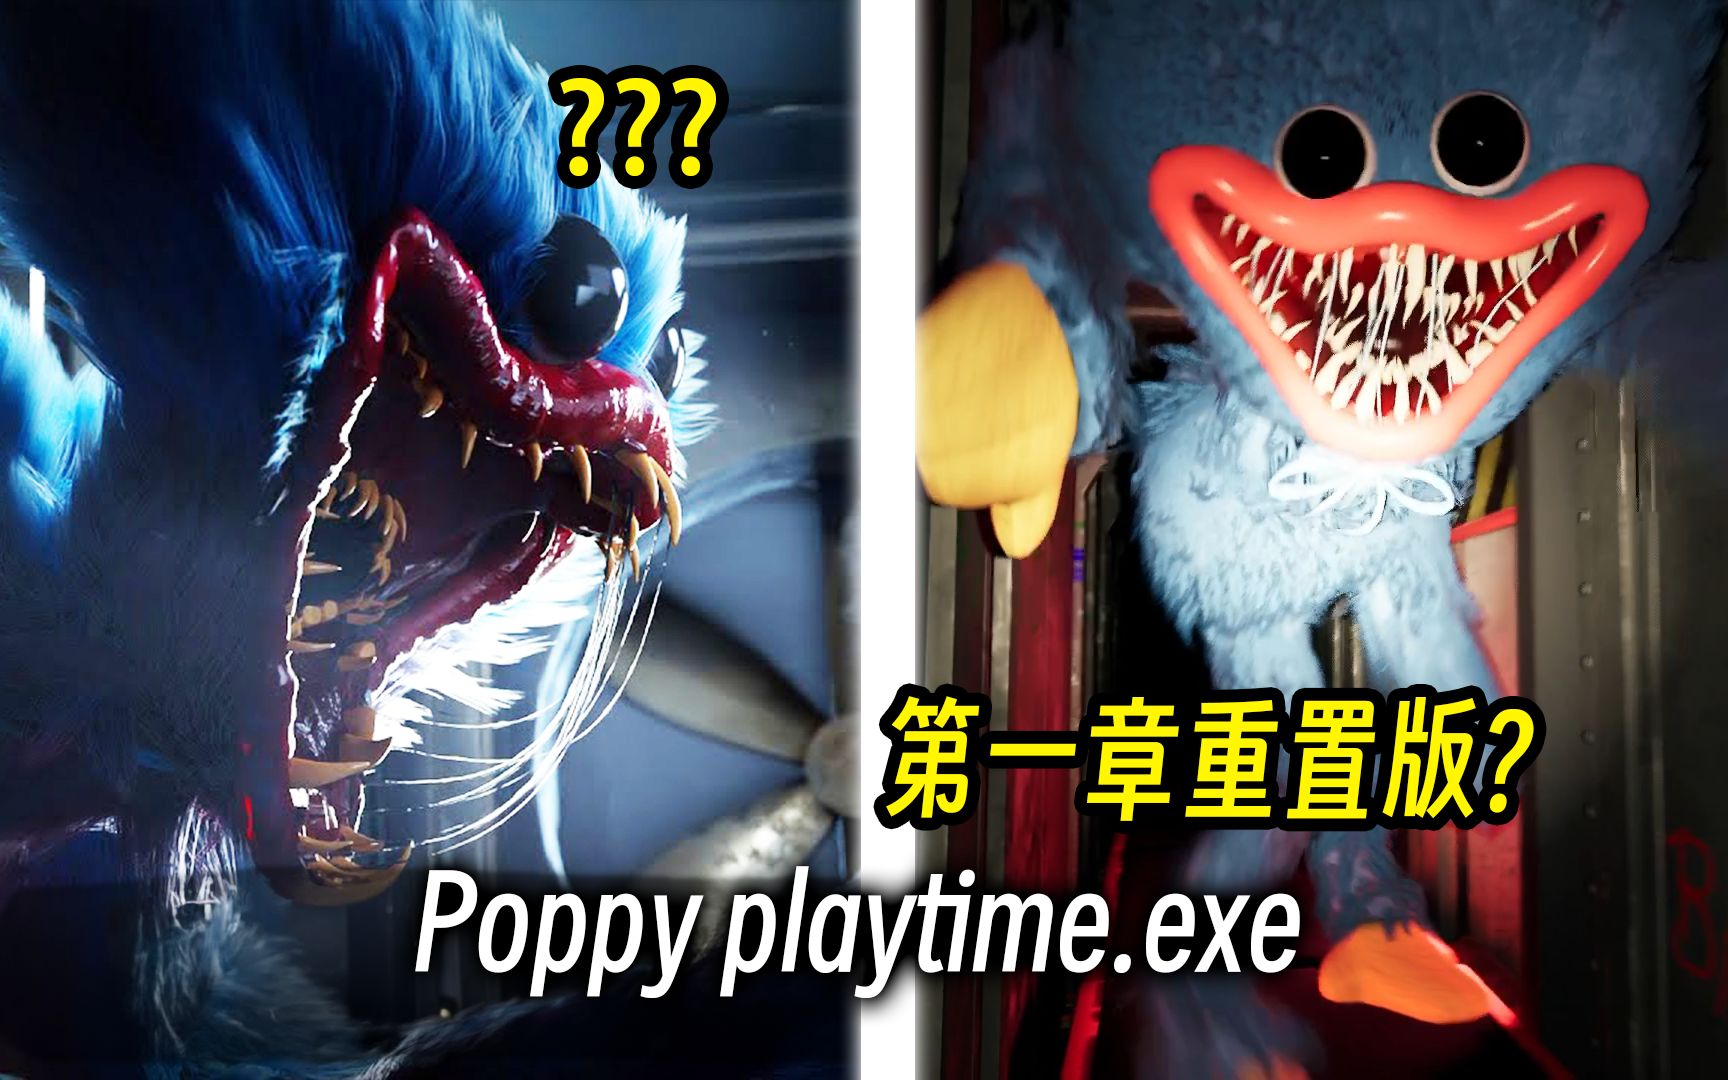 第一章重制版Poppy playtime?!! 超多细节秘密的巨大更新!!